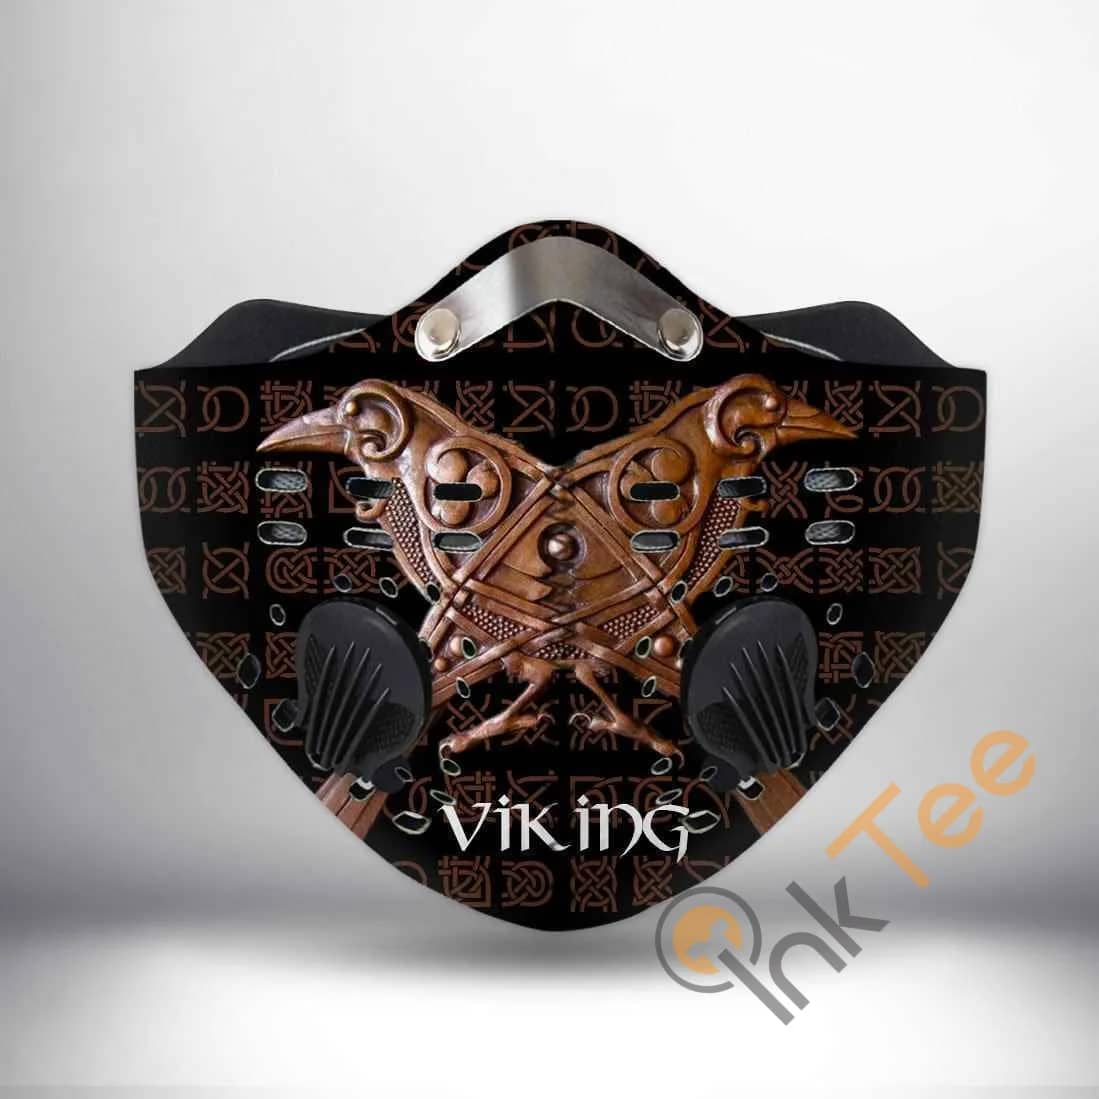 Raven Viking Filter Activated Carbon Pm 2.5 Fm Sku 555 Face Mask